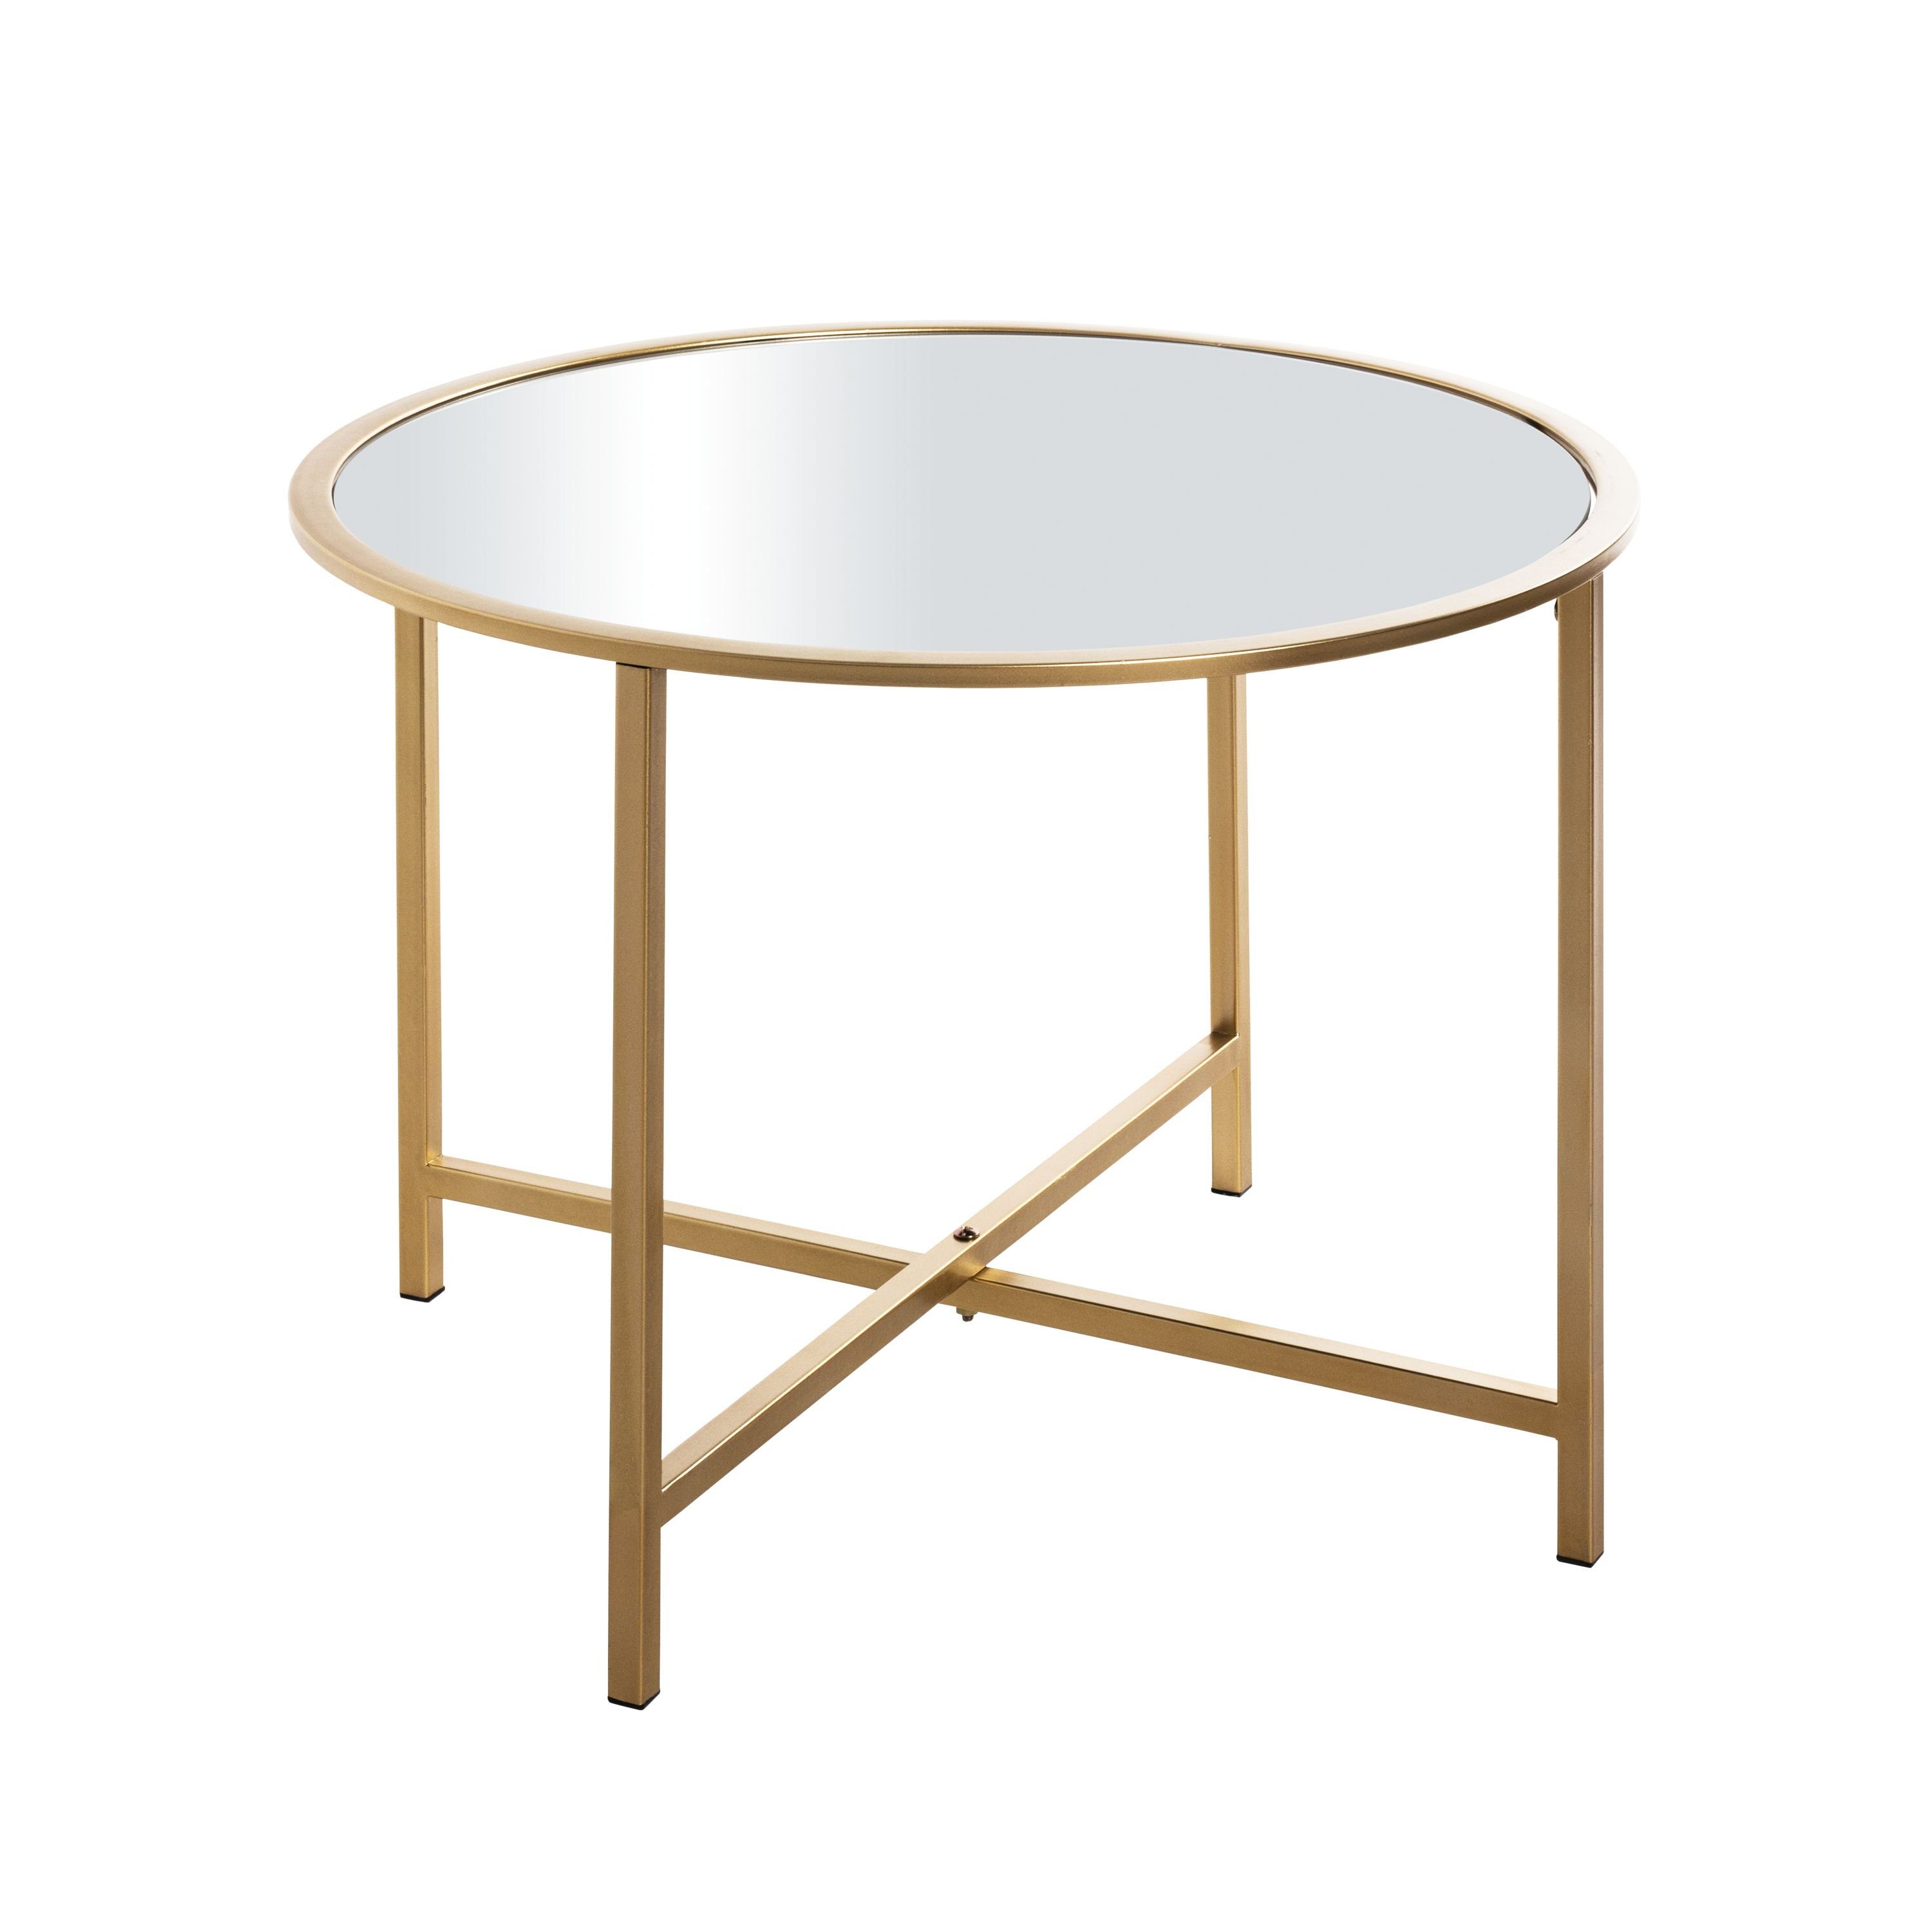 HAKU Beistelltisch Beistelltisch, HAKU Möbel Beistelltisch (DH 60x45 cm) DH 60x45 cm gold Kaffeetisch